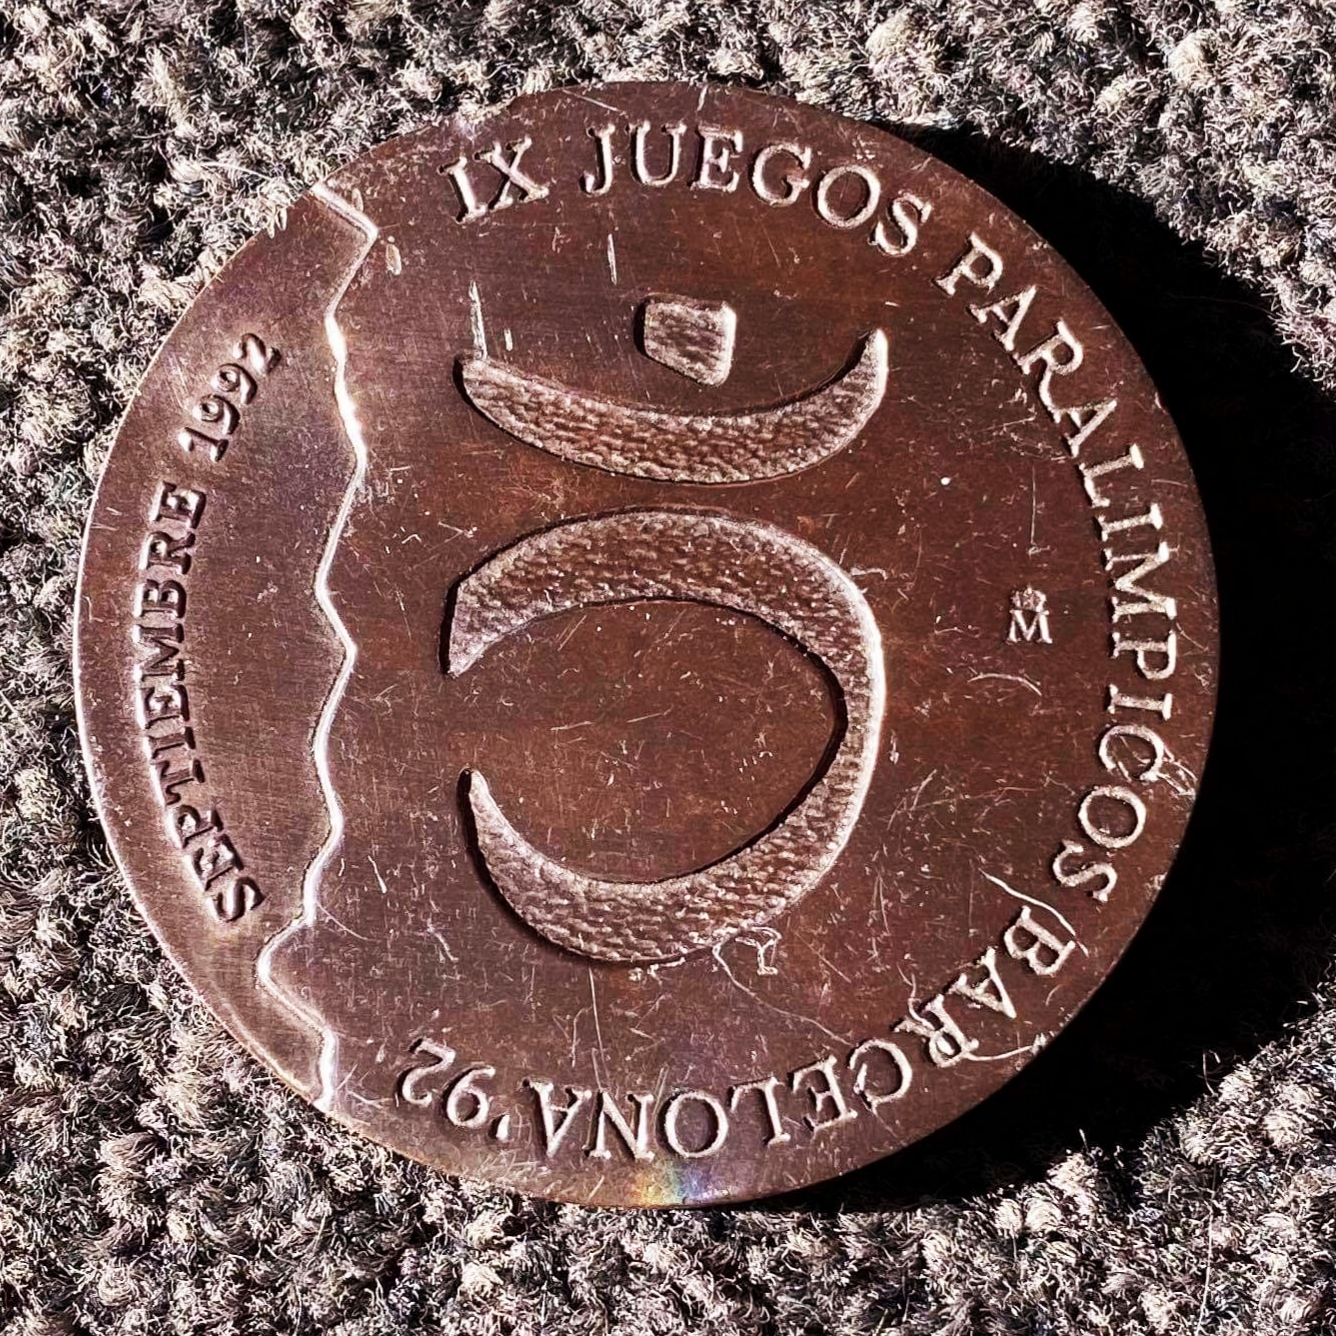 Barcelona 1992 commemorative medal